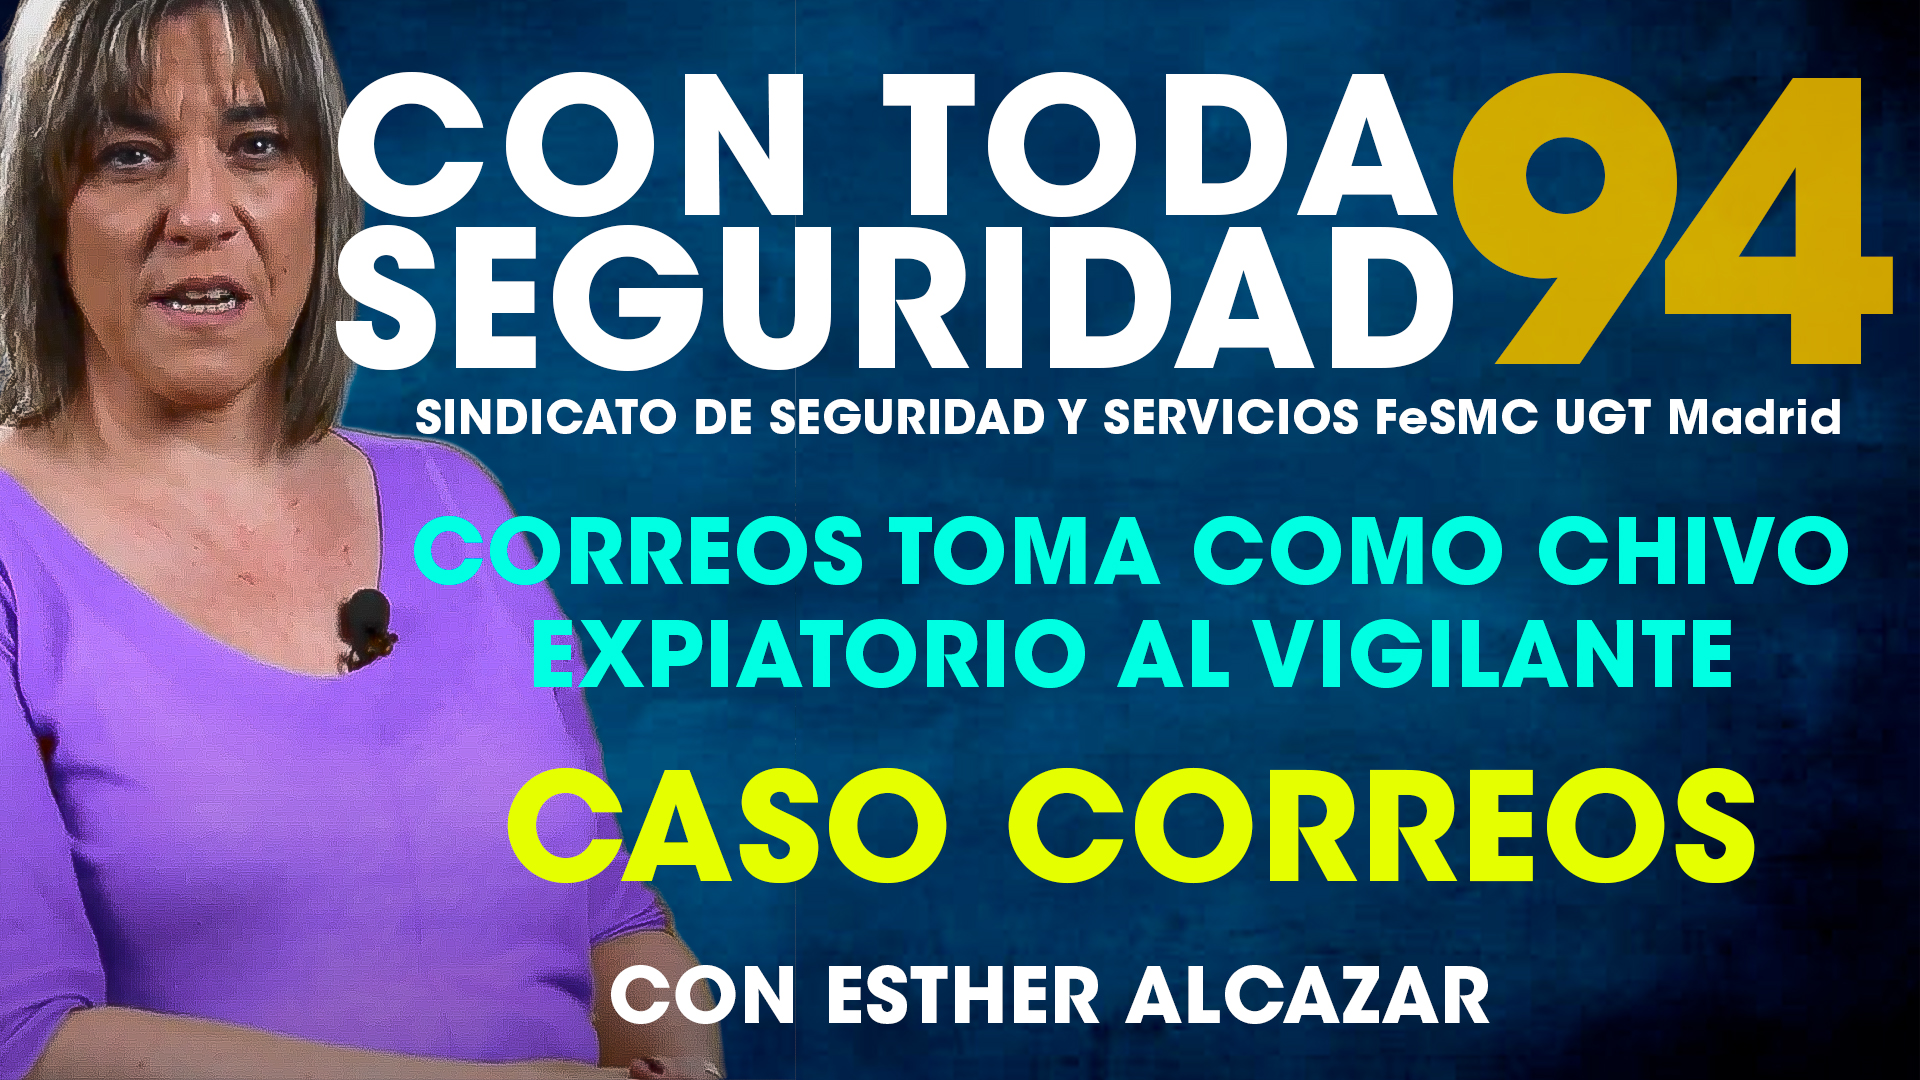 VIDEO | Con Toda Seguridad nº 94 | CORREOS TOMA COMO CHIVO EXPIATORIO AL VIGILANTE DE SEGURIDAD